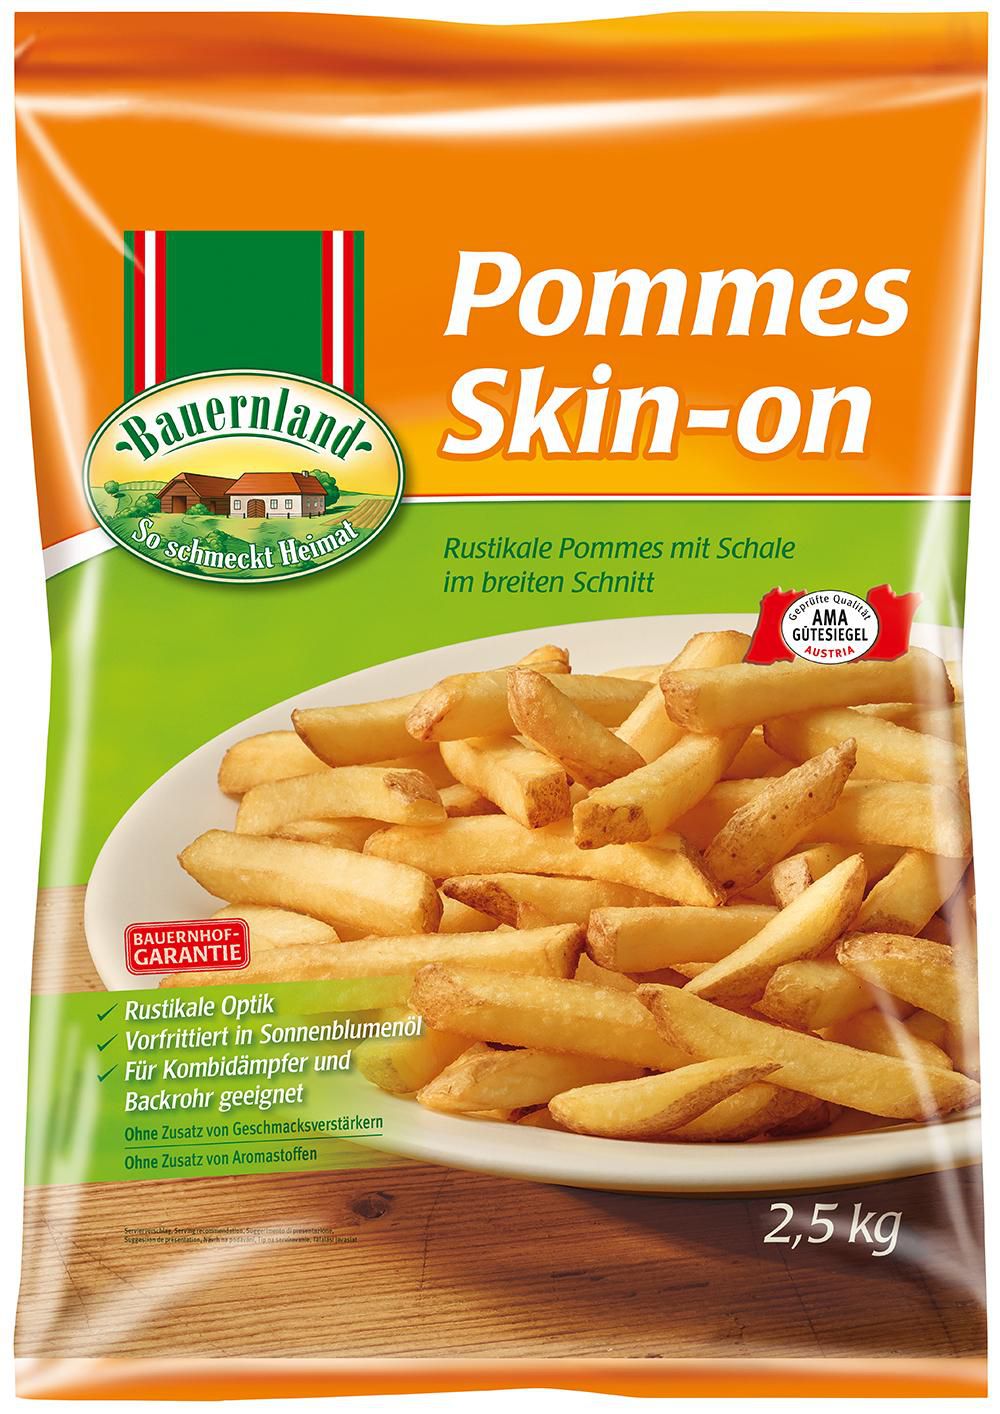 Pommes Skin-on 4 x 2,5 kg